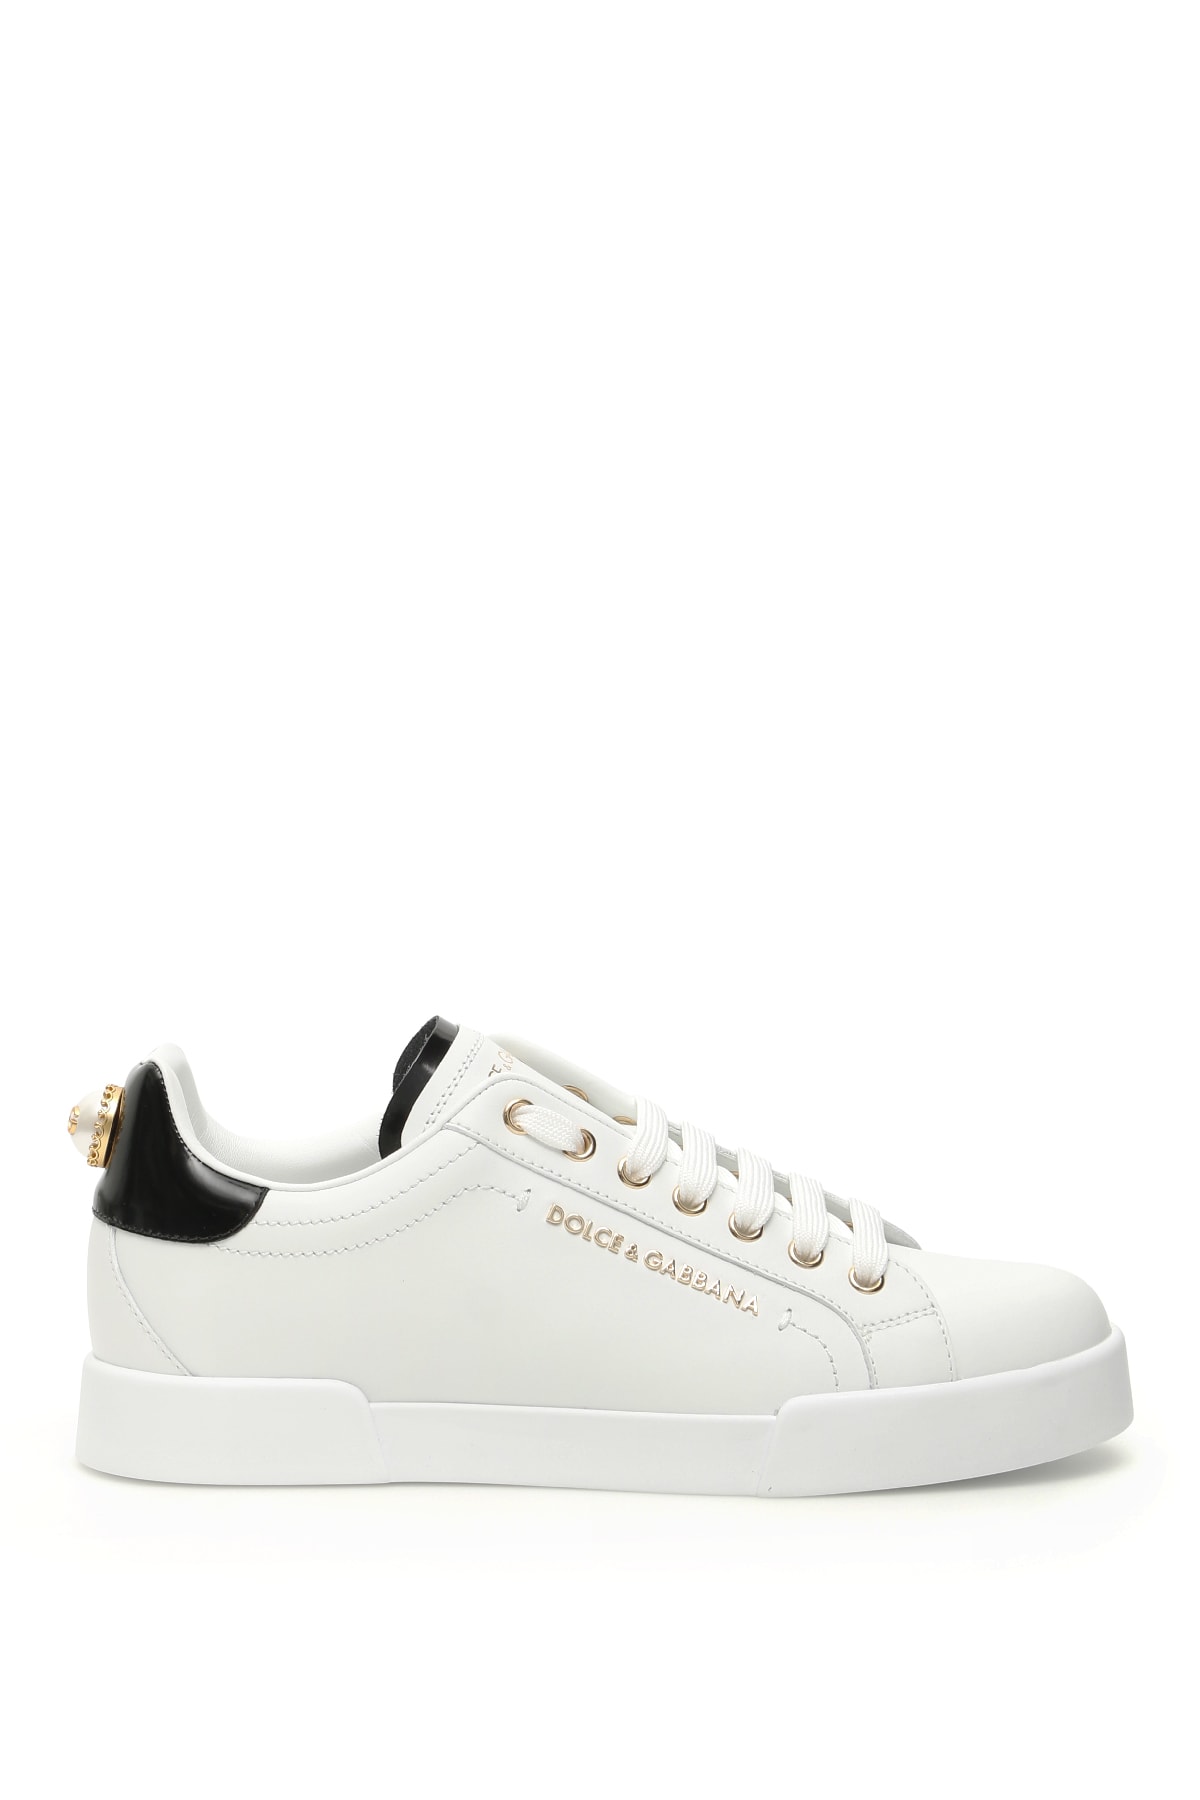 Dolce & Gabbana Portofino Leather Sneakers Dg Pearl